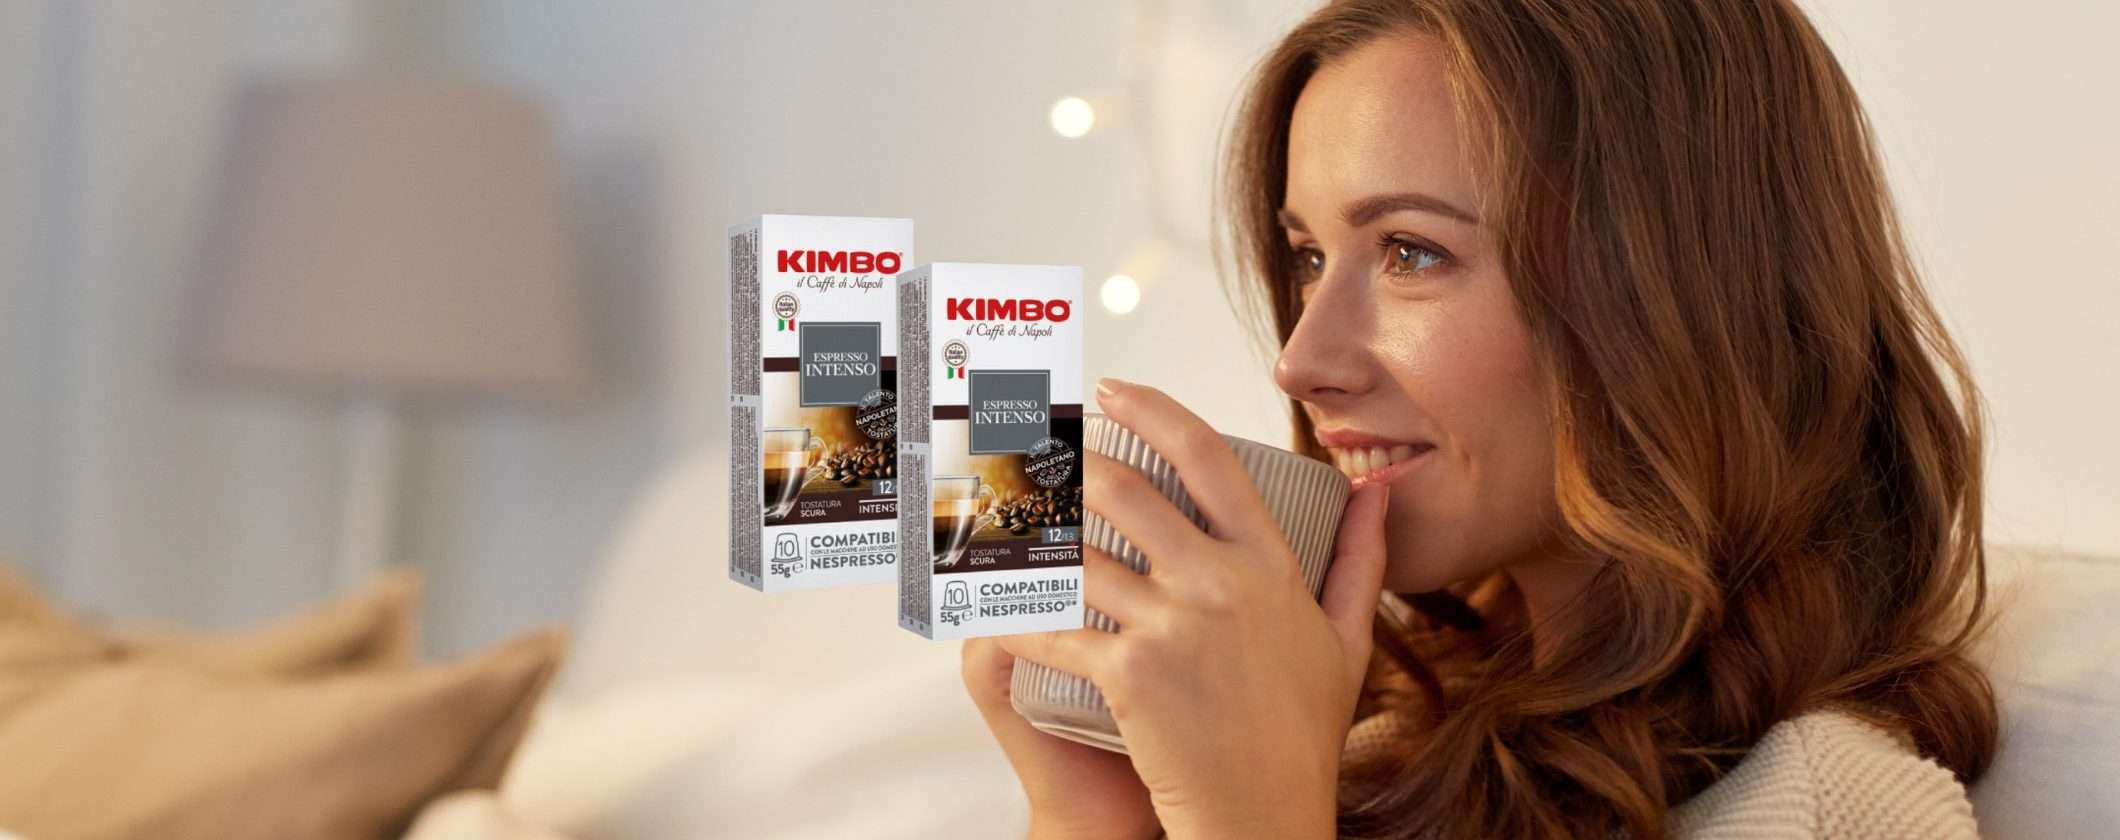 Caffè Kimbo in Capsule per Nespresso a prezzo speciale su eBay